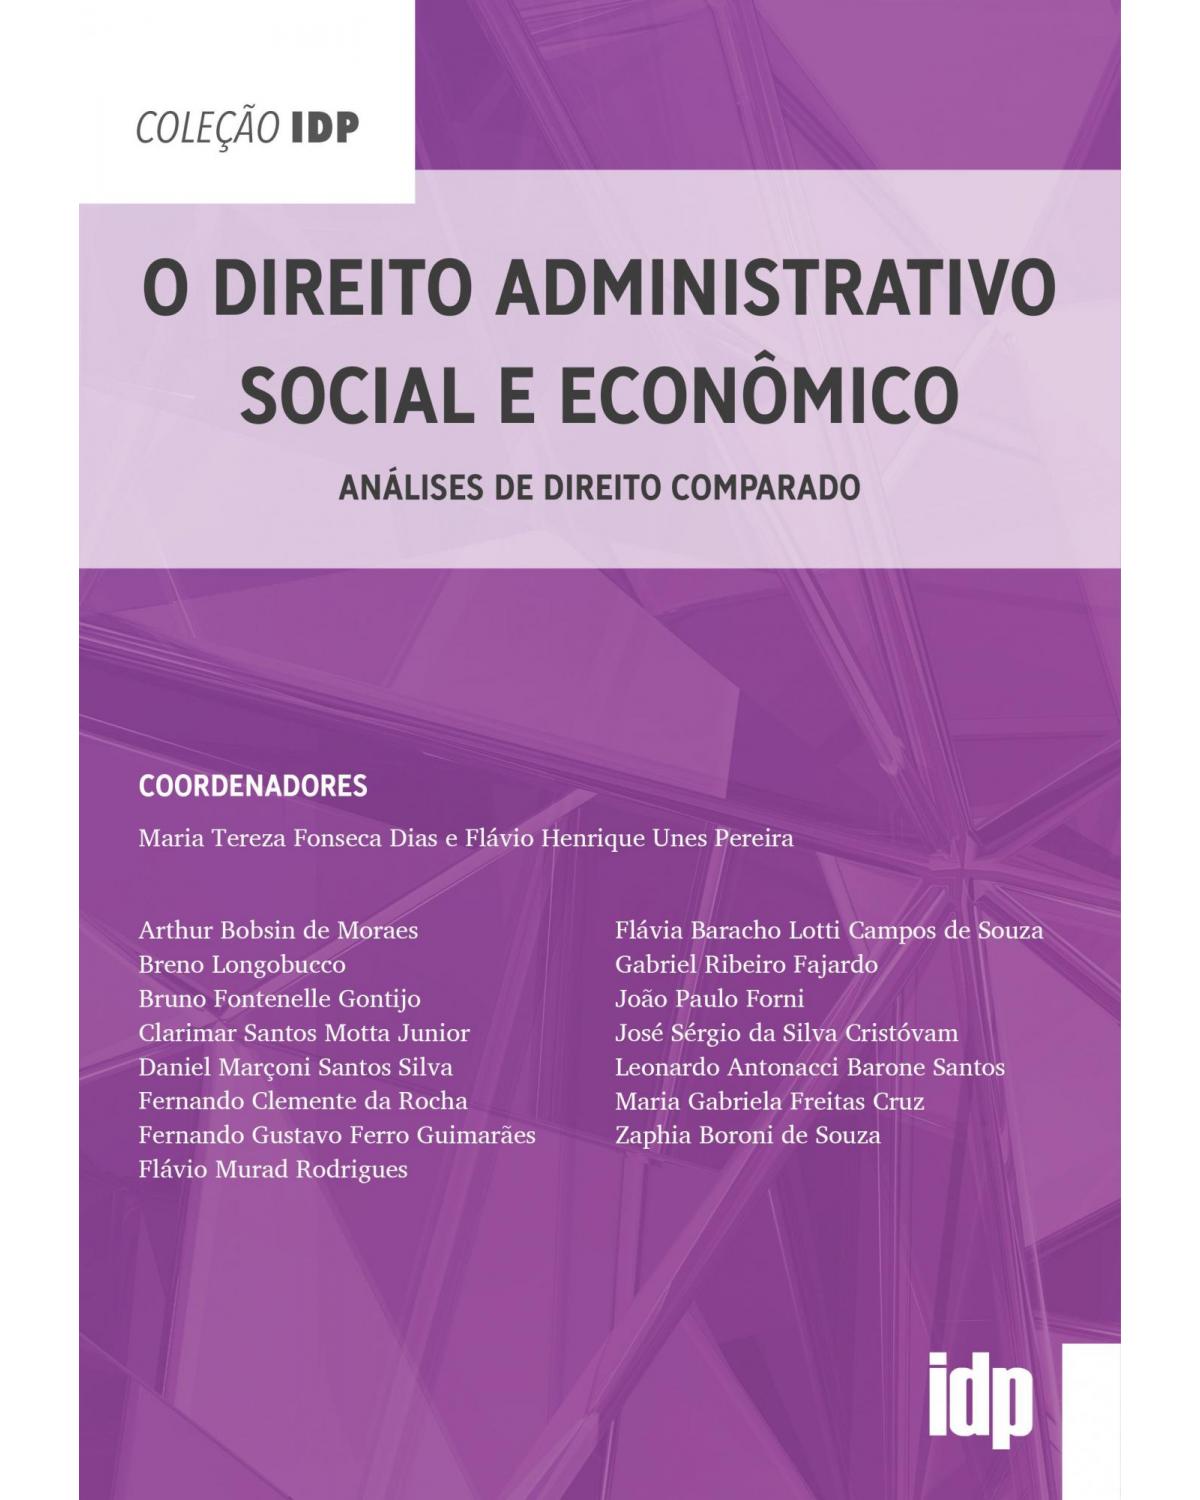 O direito administrativo social e econômico - análises de direito comparado - 1ª Edição | 2021